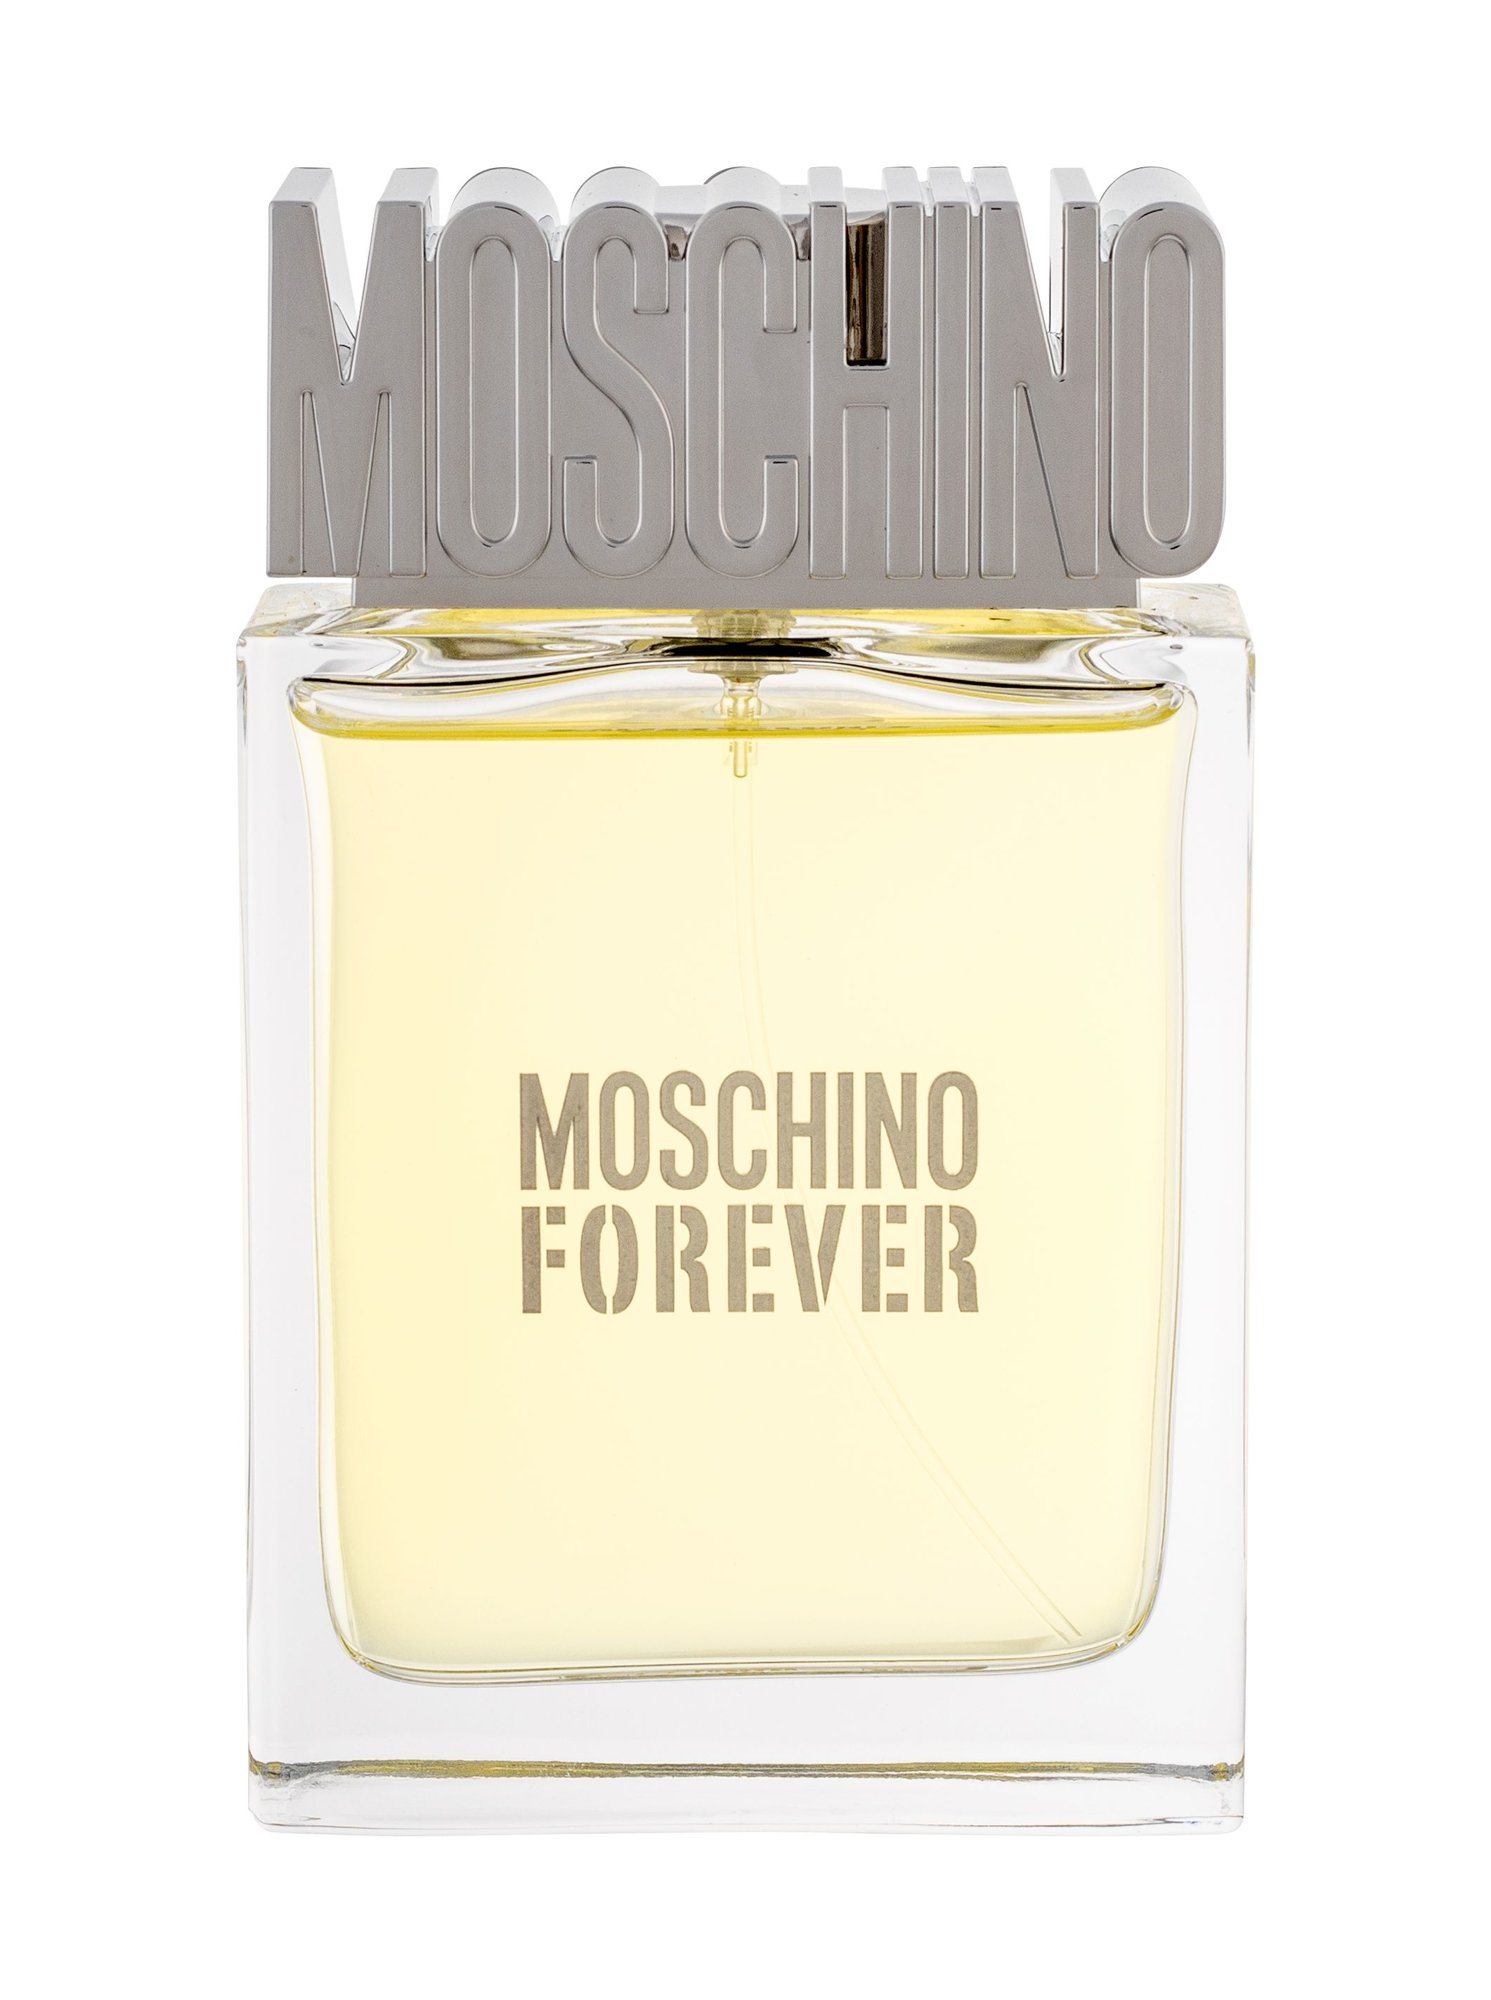 Moschino Forever For Men, edt 100ml